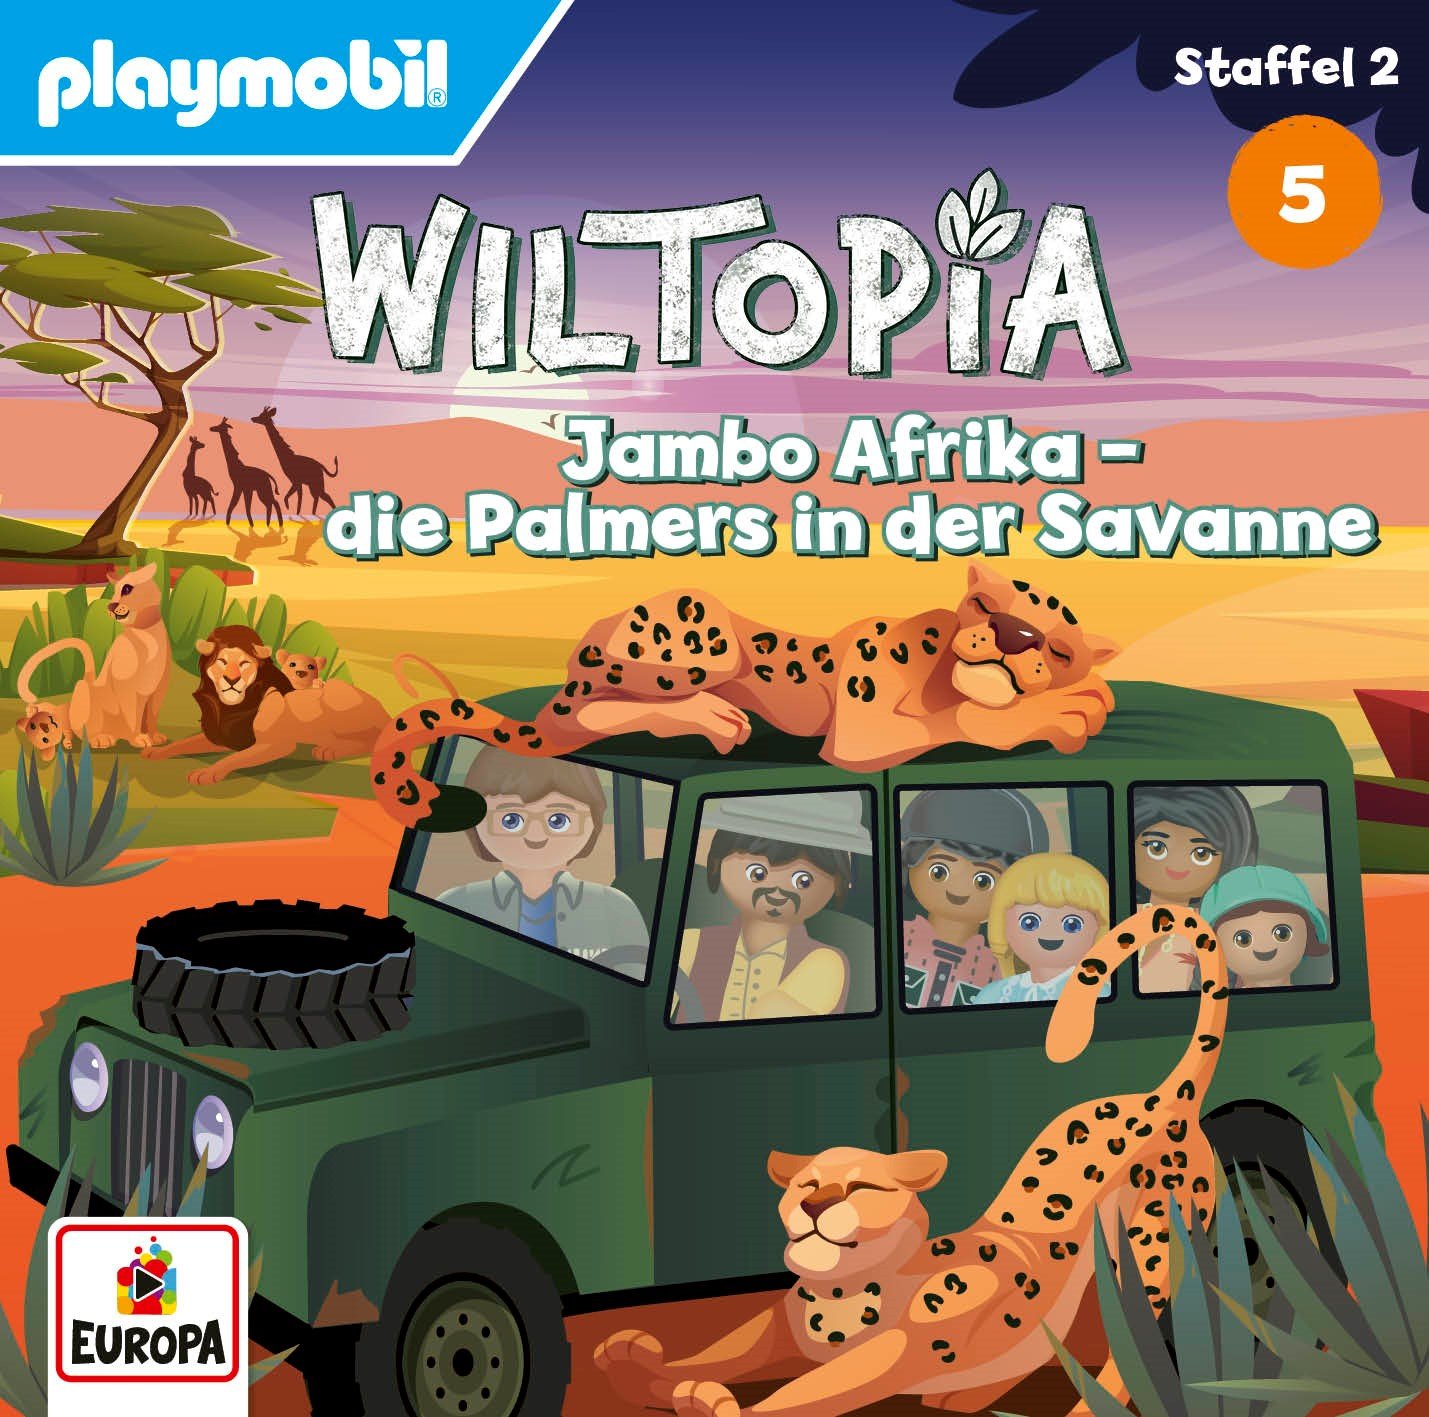 Wiltopia: Jambo Afrika! - Die Palmers in der Savanne